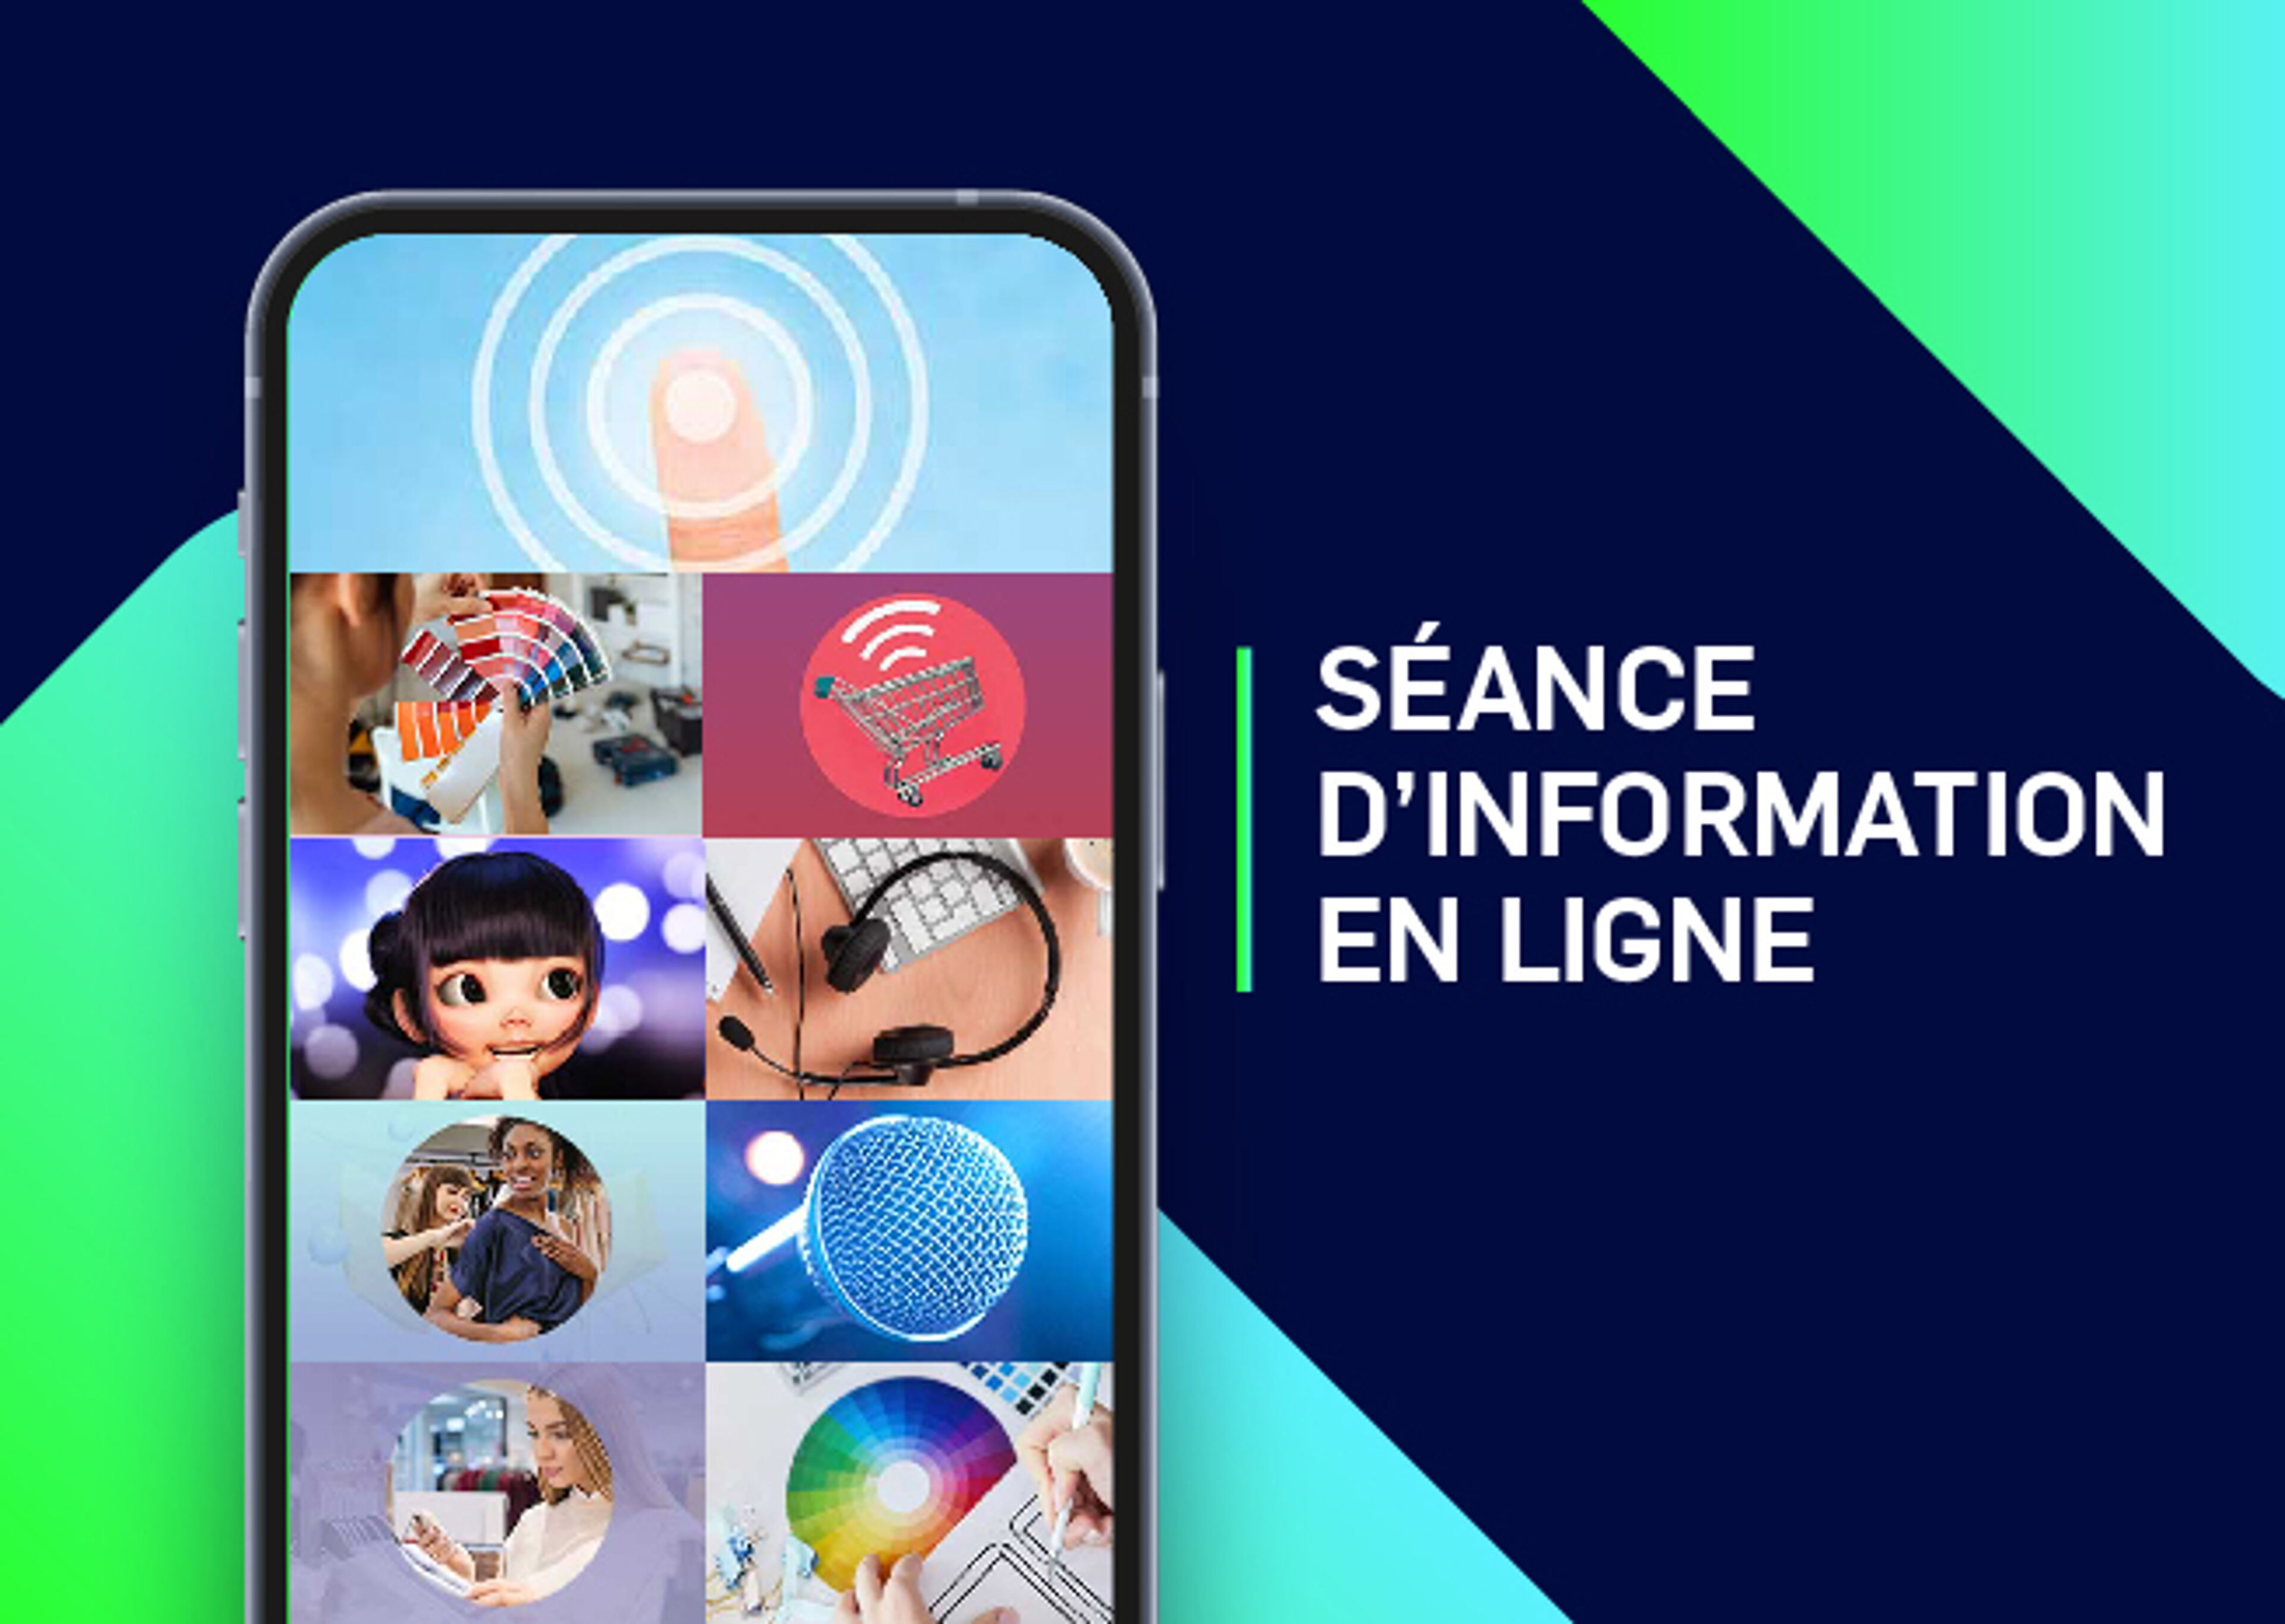 Image promotionnelle pour une session d'information en ligne, présentant diverses icônes d'interaction numérique sur un écran de smartphone